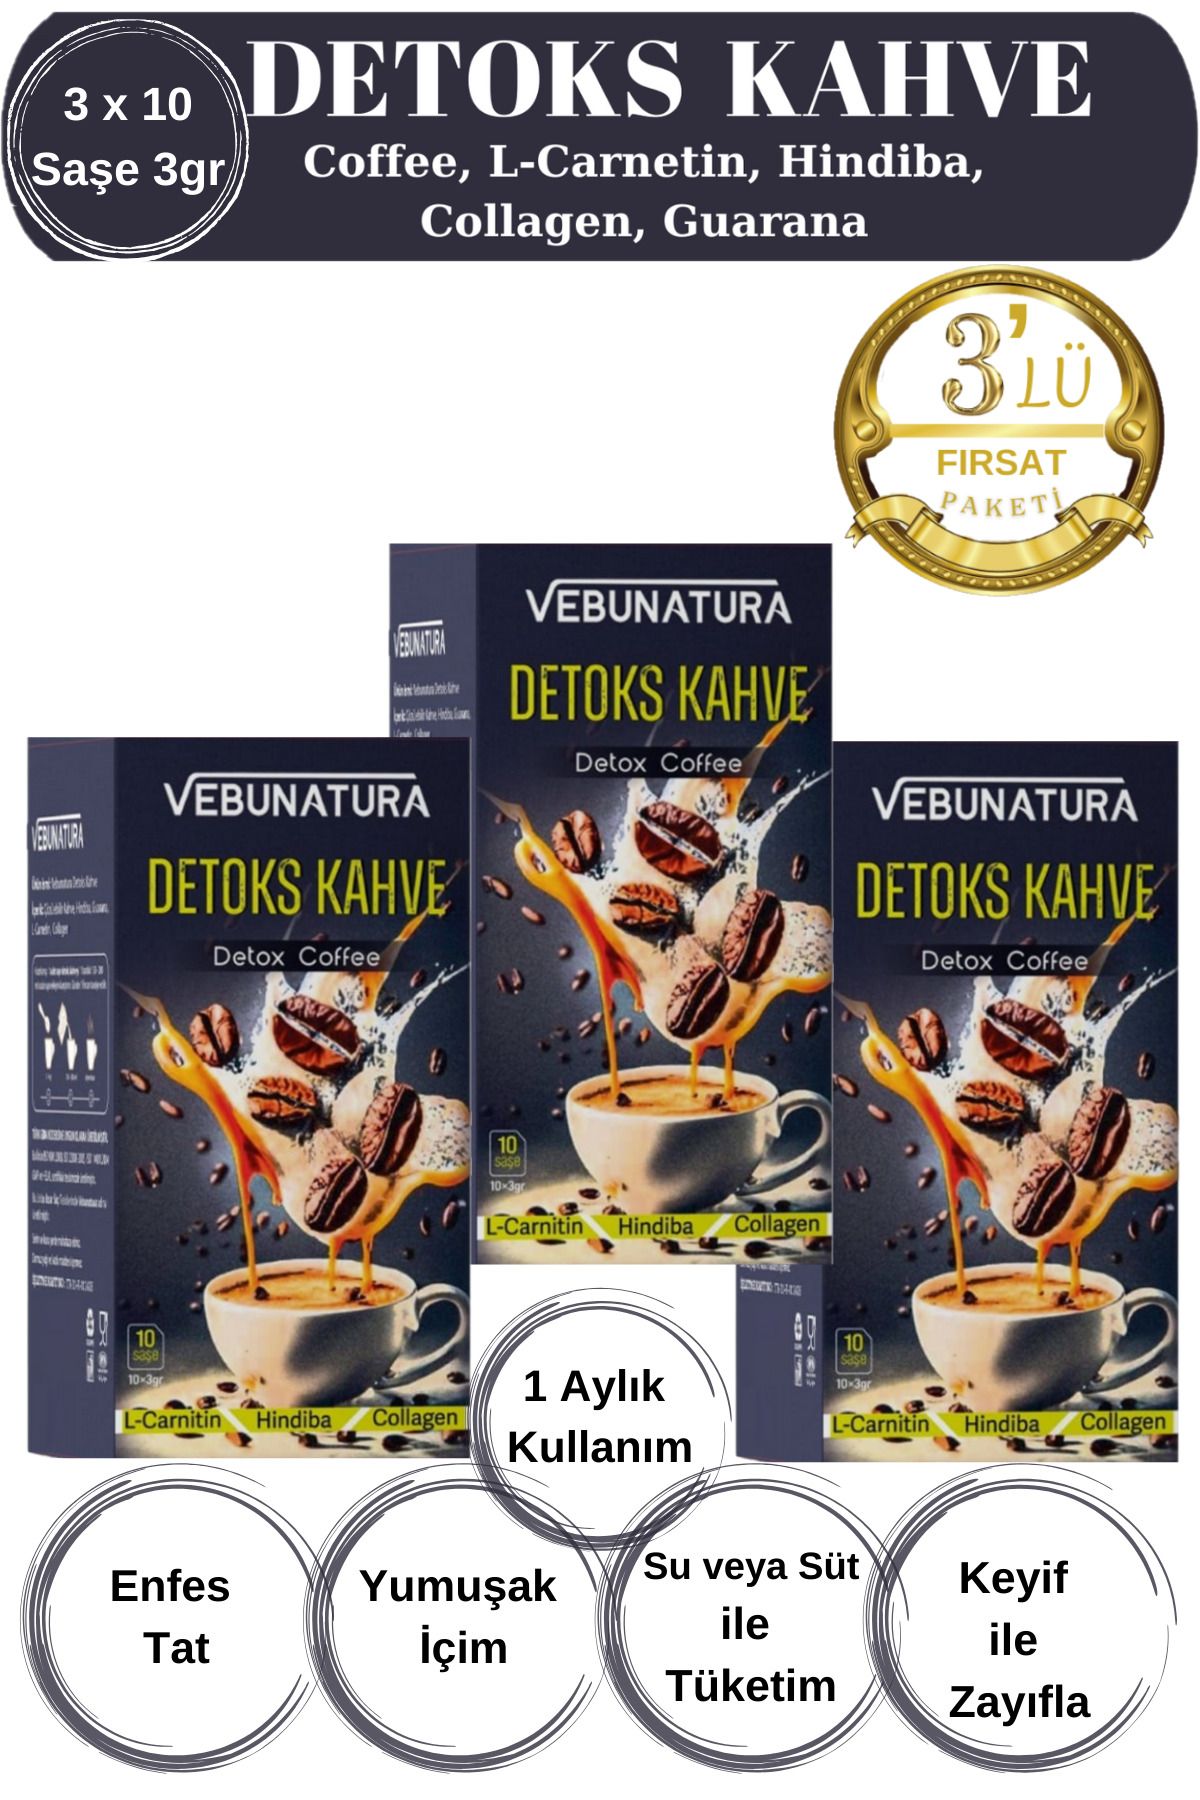 VEBUNATURA Detox Kahve (Hindiba, L-Carnitin, Collagen,Guarana) İçeren Detoks Diyet Kahve 3'lü Fırsat Paketi